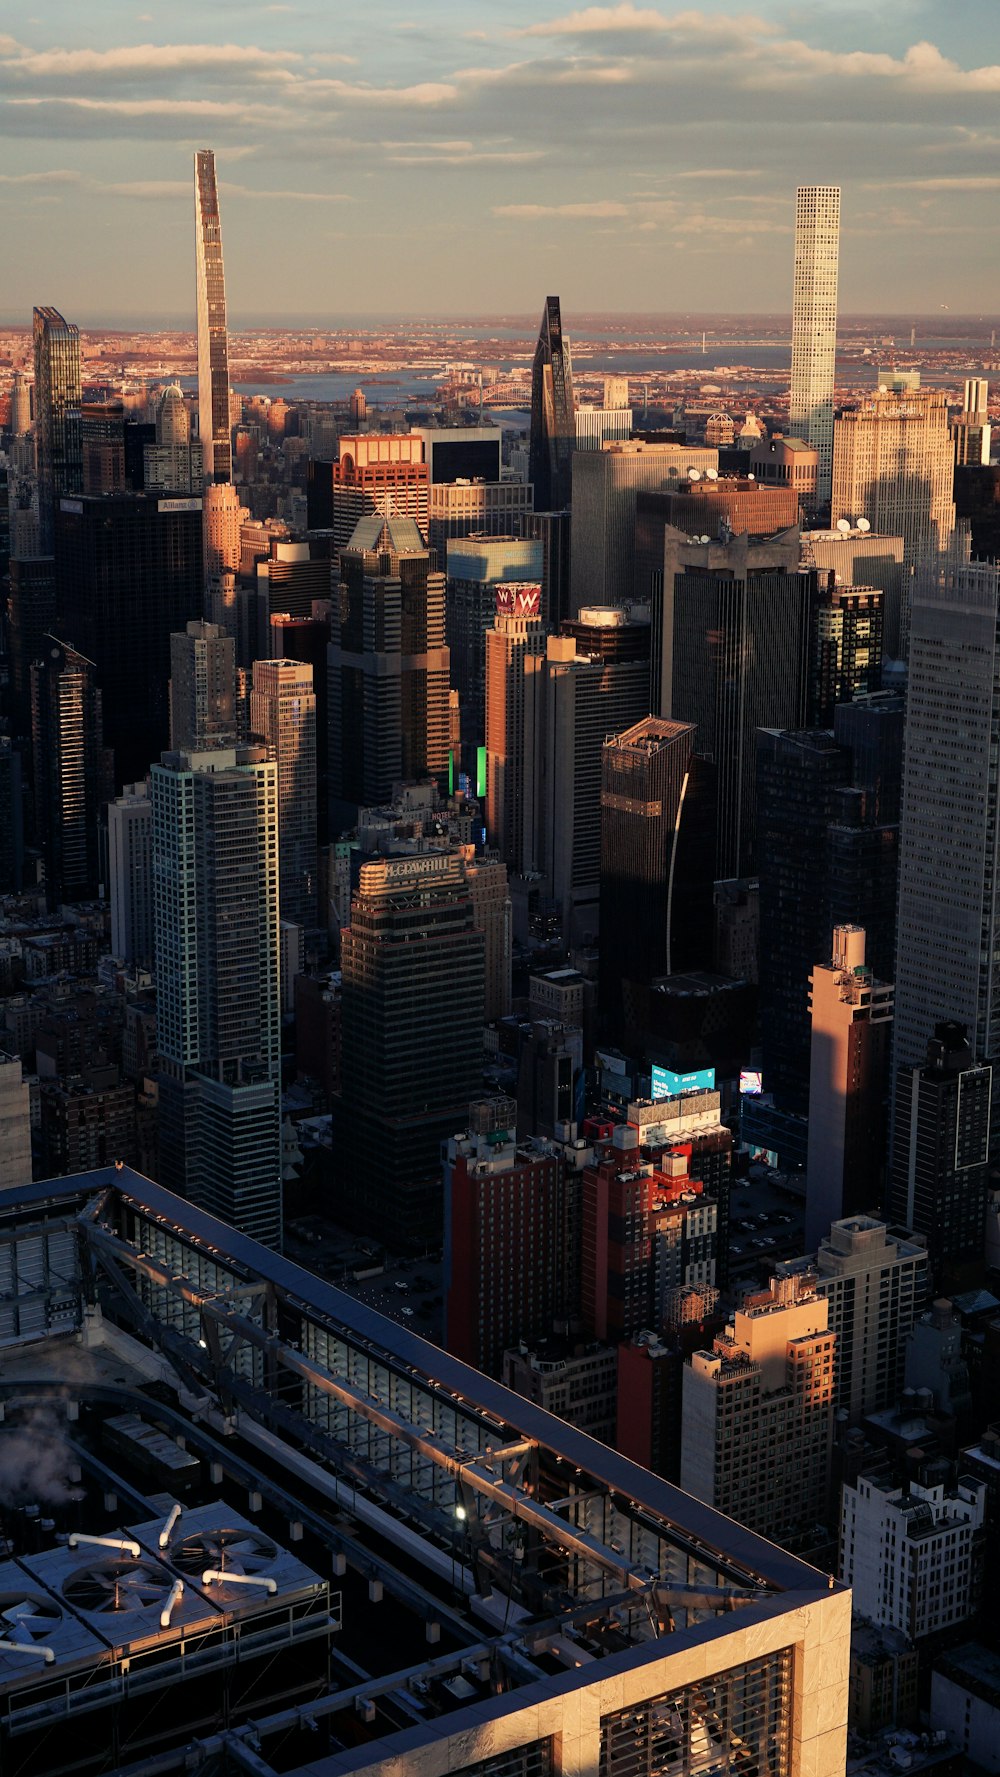 Blick auf eine Stadt von der Spitze eines Gebäudes